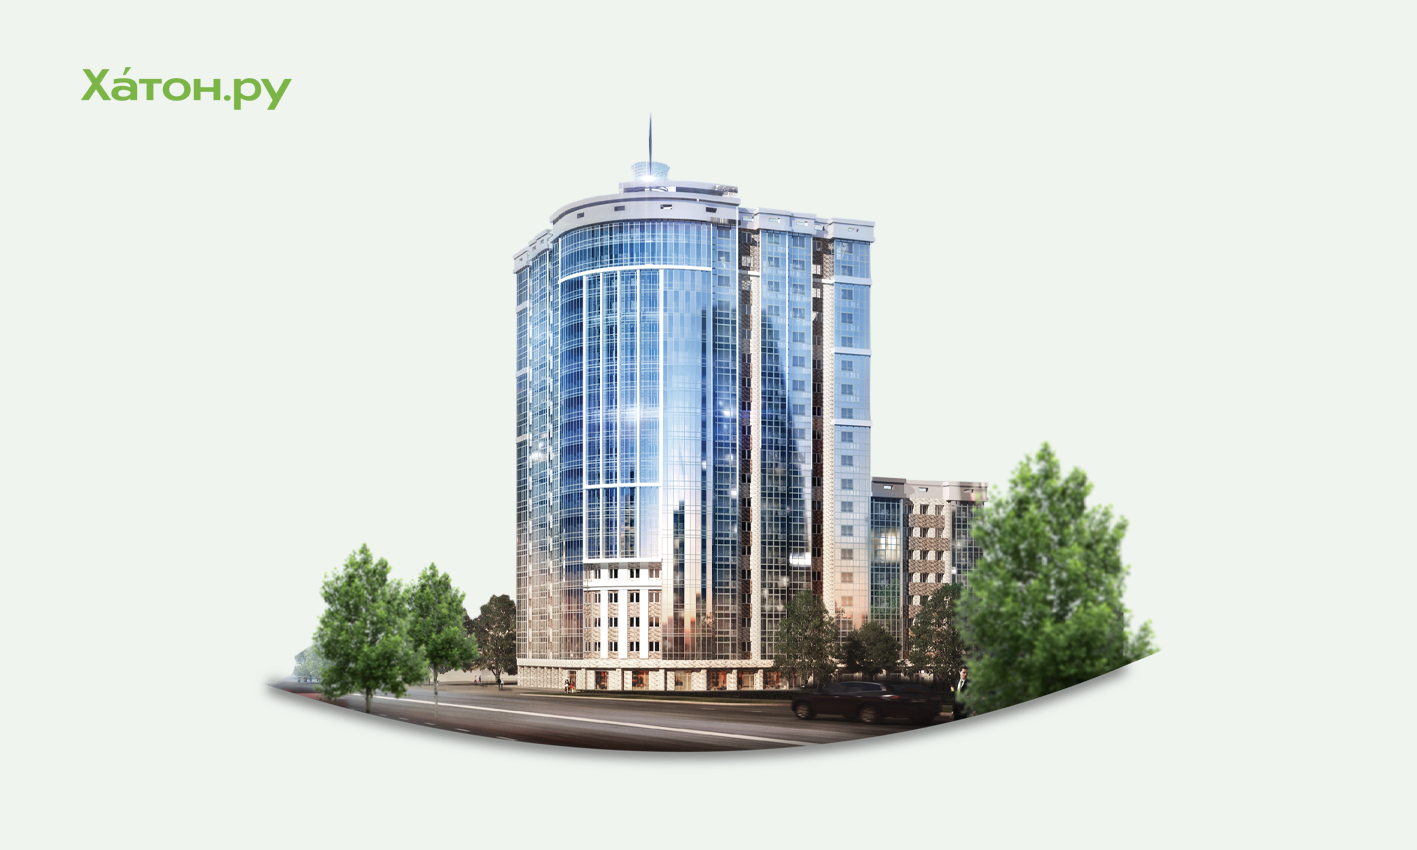 Большие элитные квартиры в Москве стали пользоваться повышенным спросом